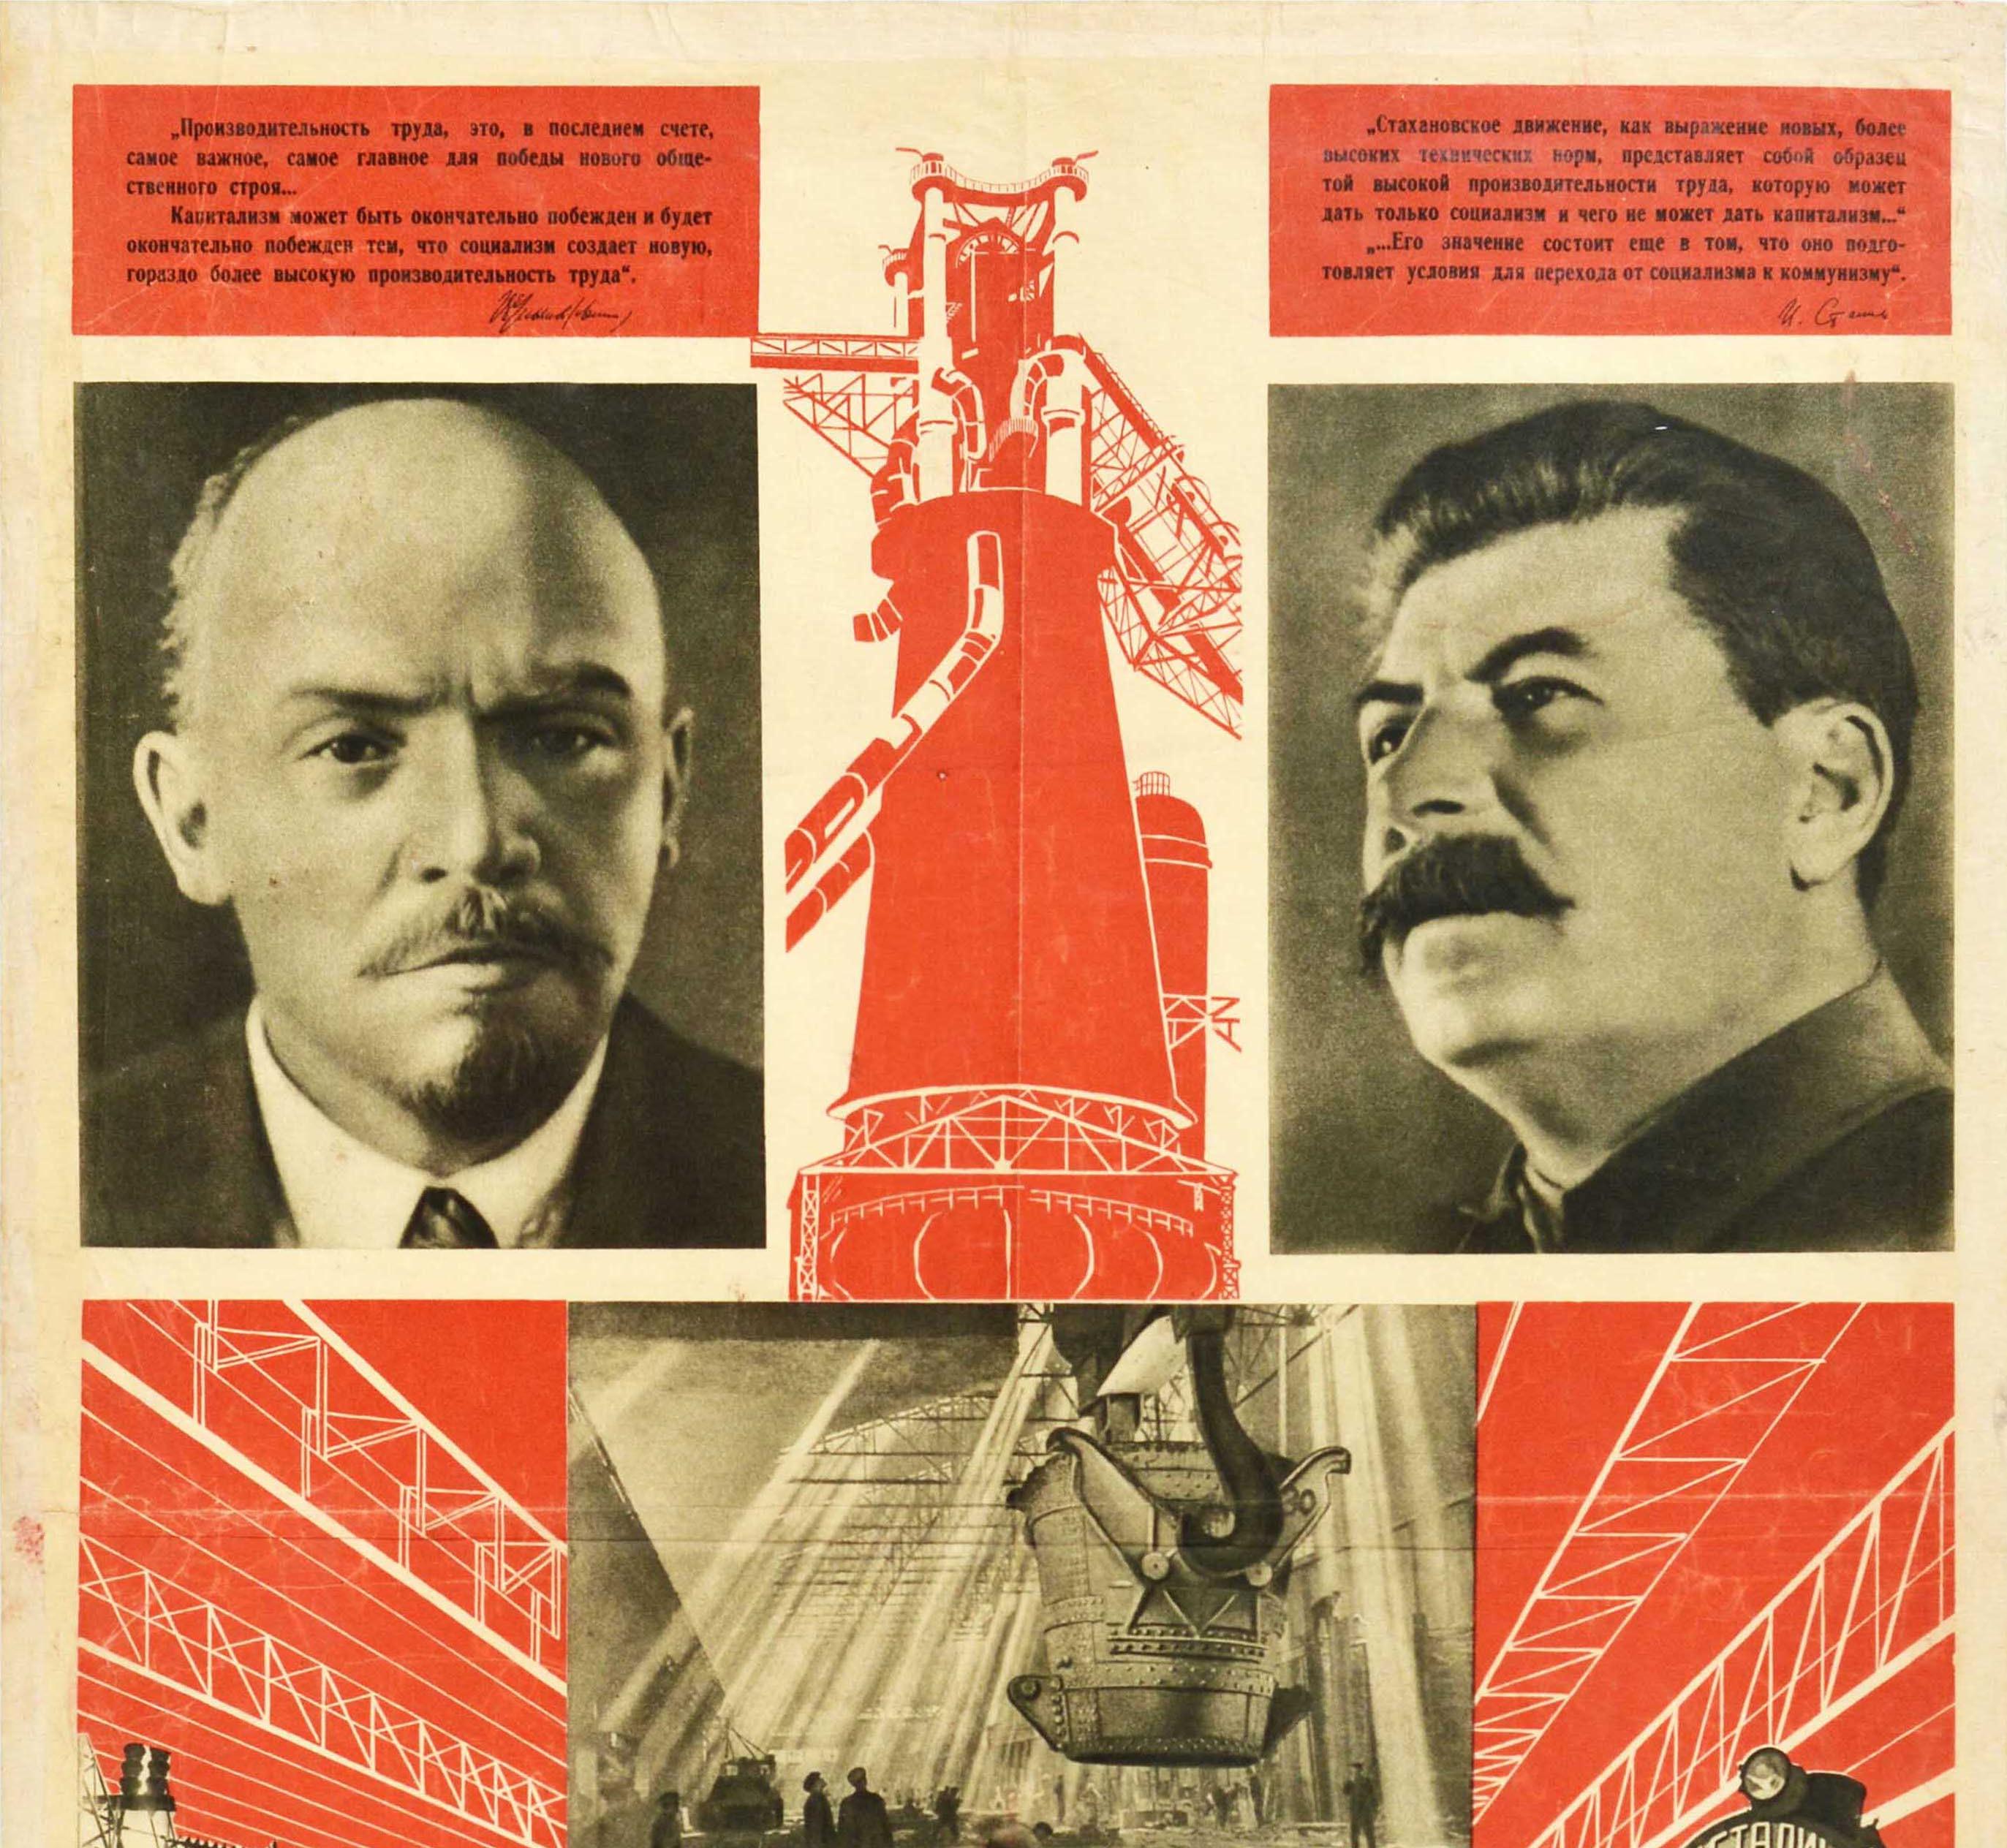 Affiche de propagande vintage originale de l'industrie socialiste de l'URSS Lenin Stalin Factory - Print de D. Moor